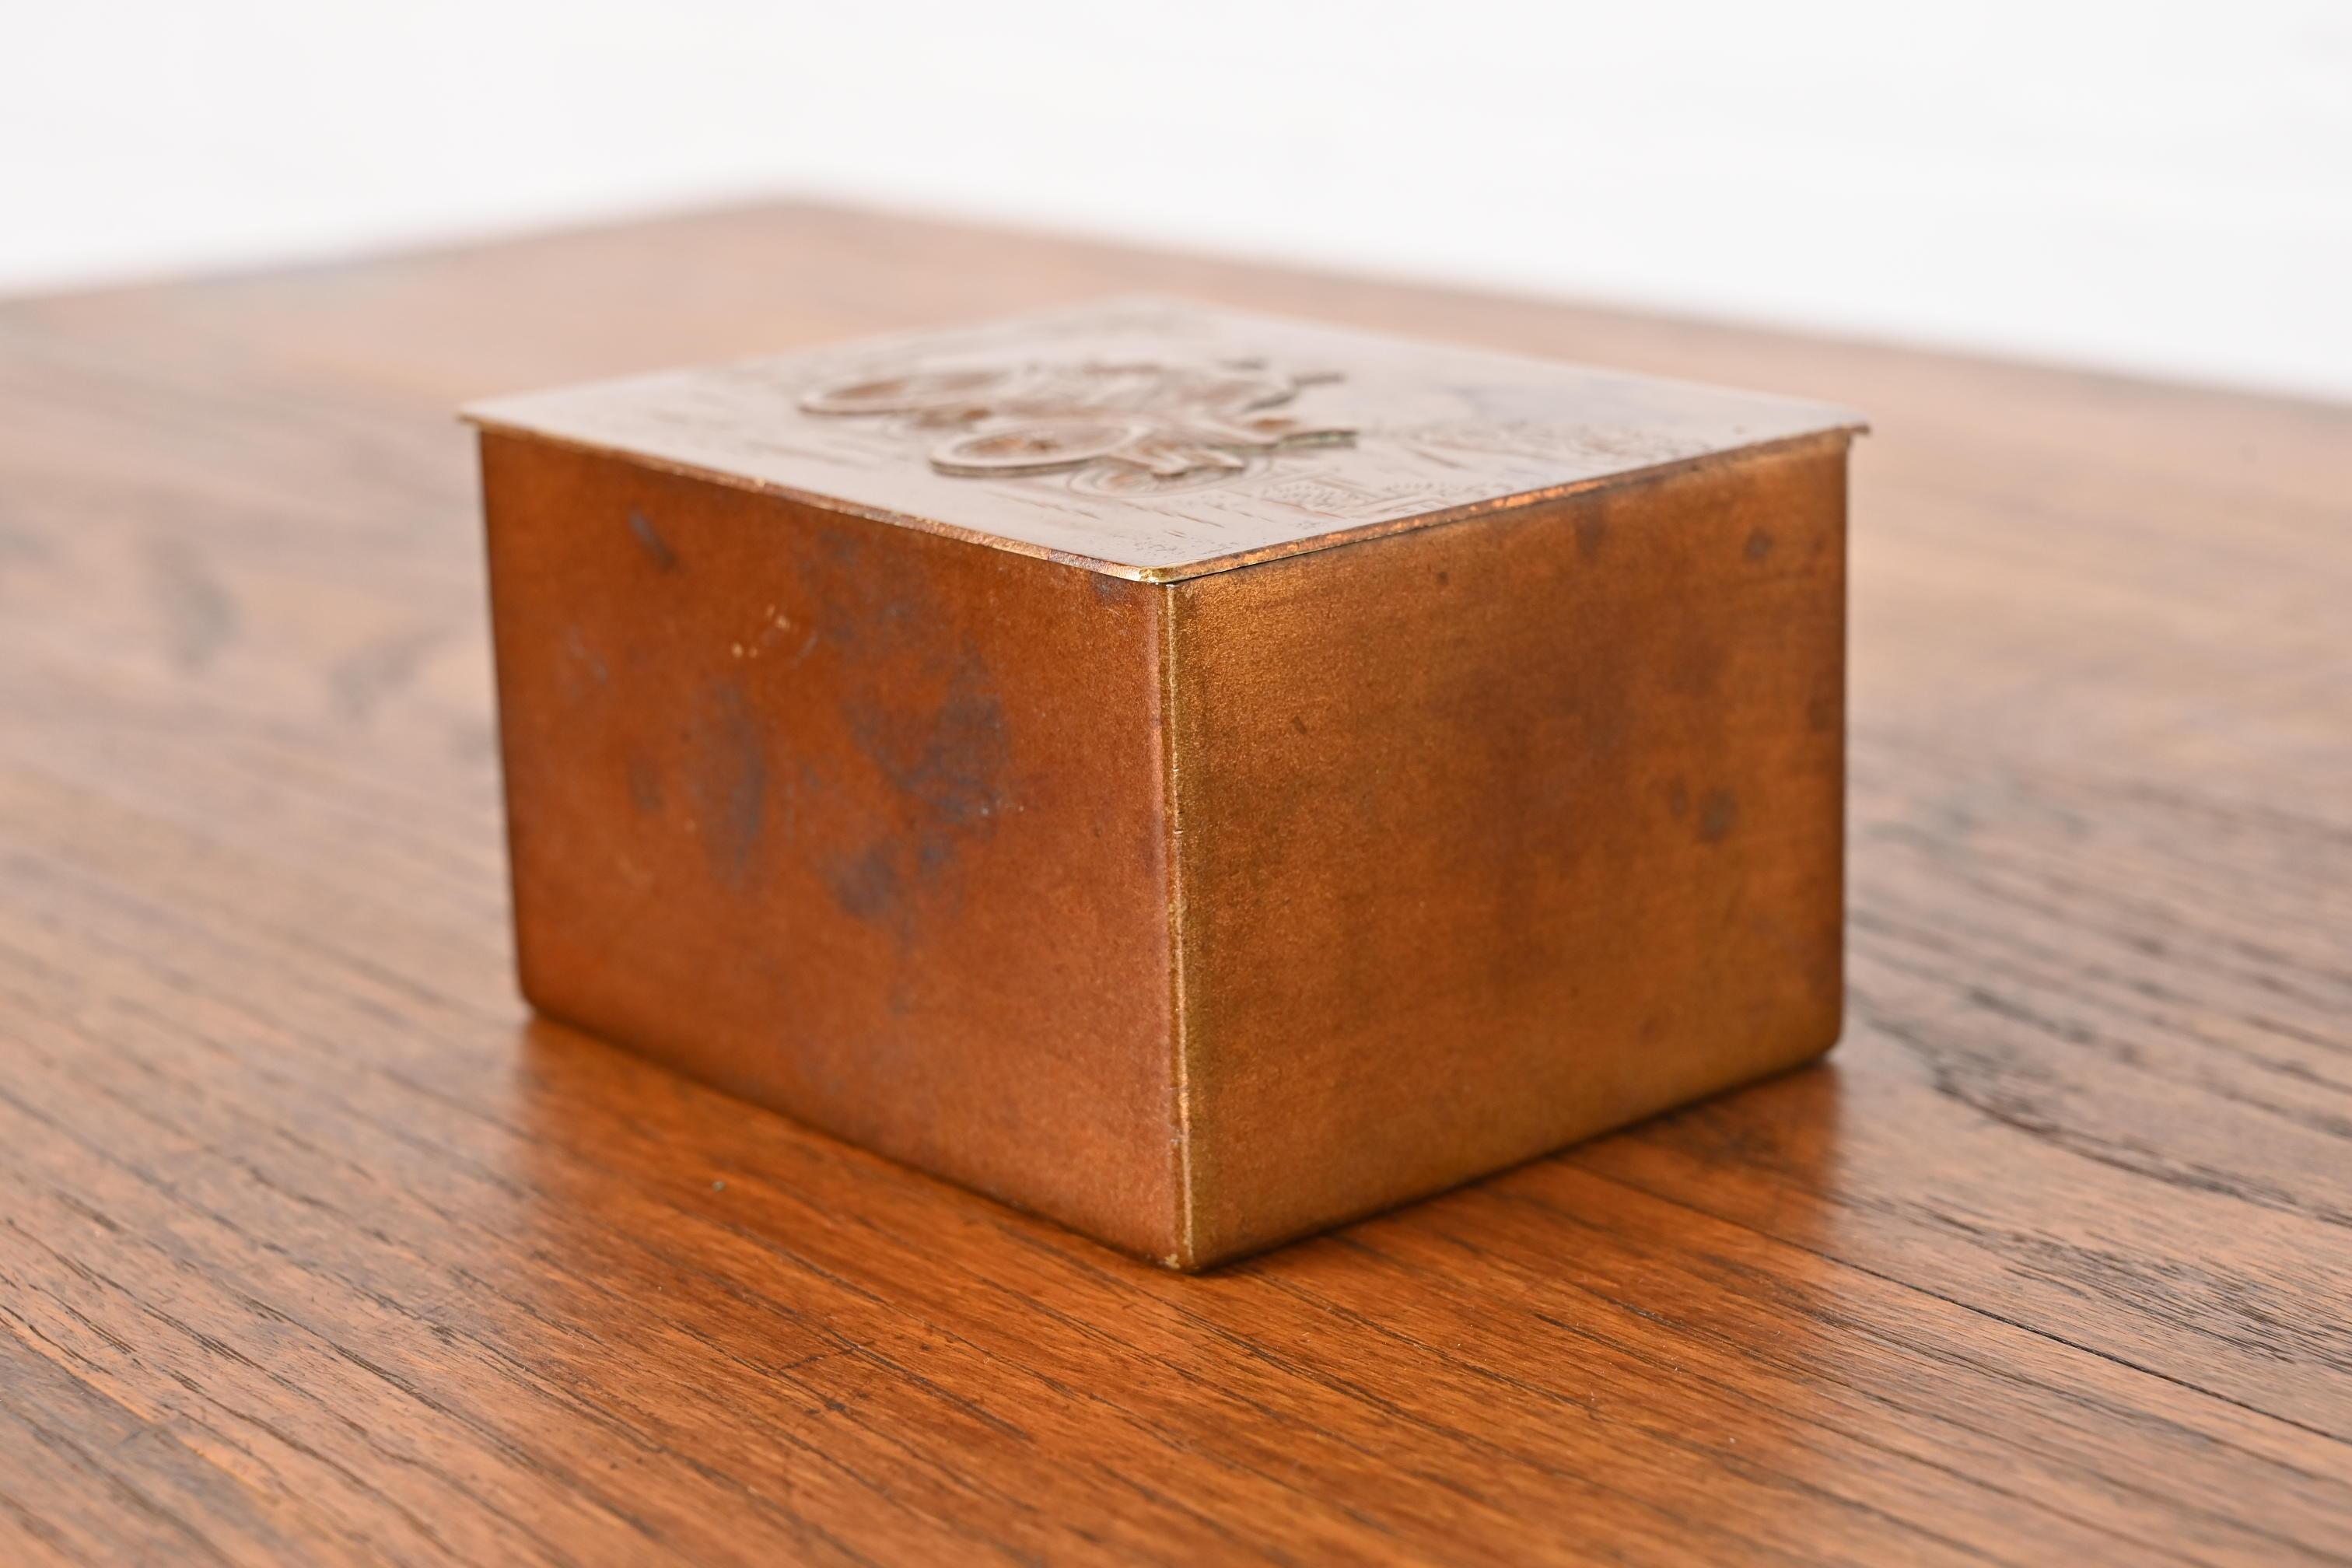 American Tiffany & Co. New York Decorative Copper Desk Box or Cigarette Box